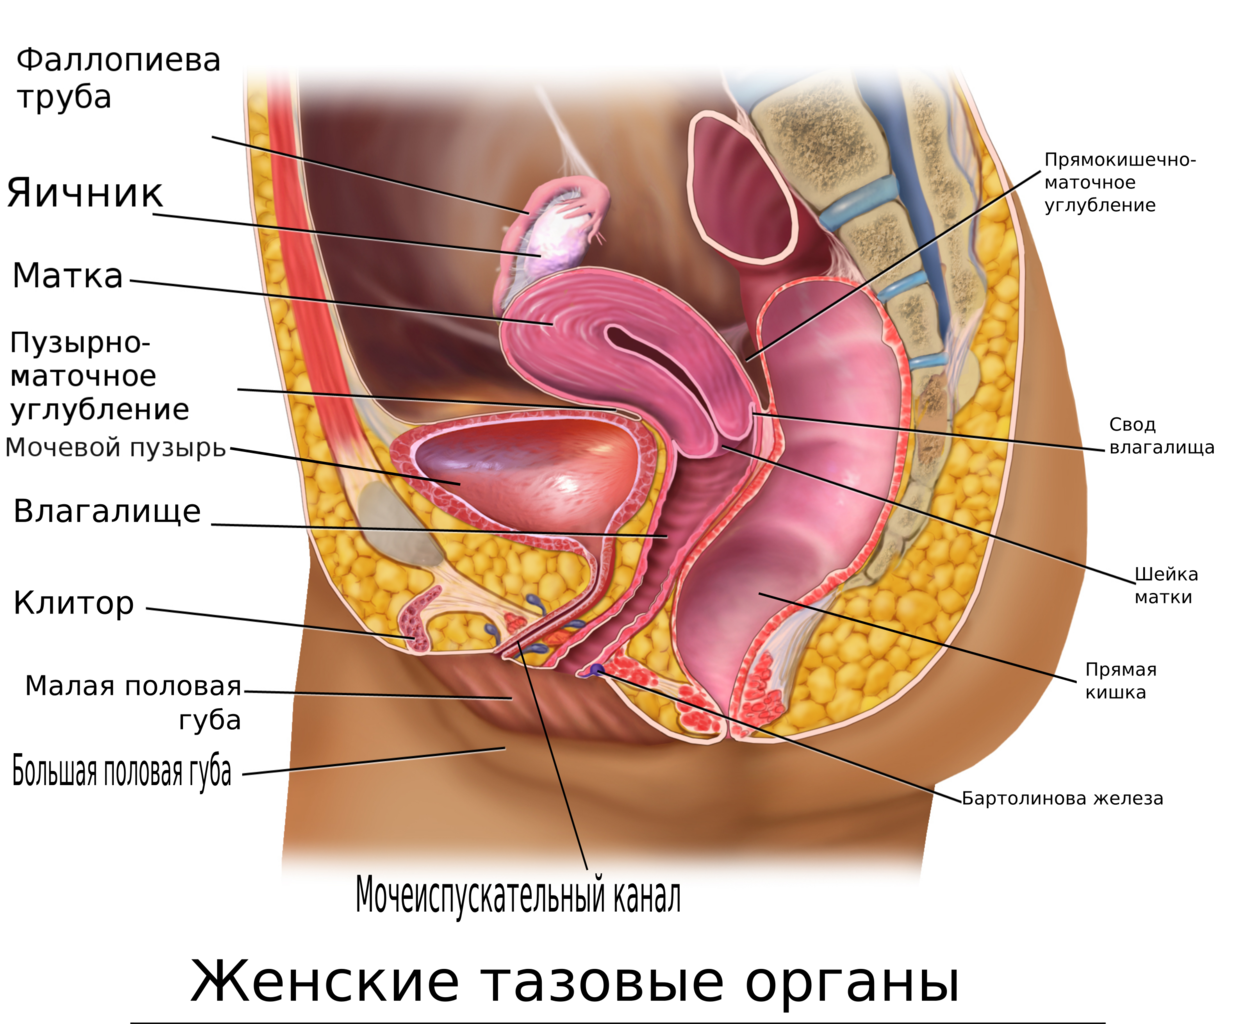 Аномалии развития половых органов